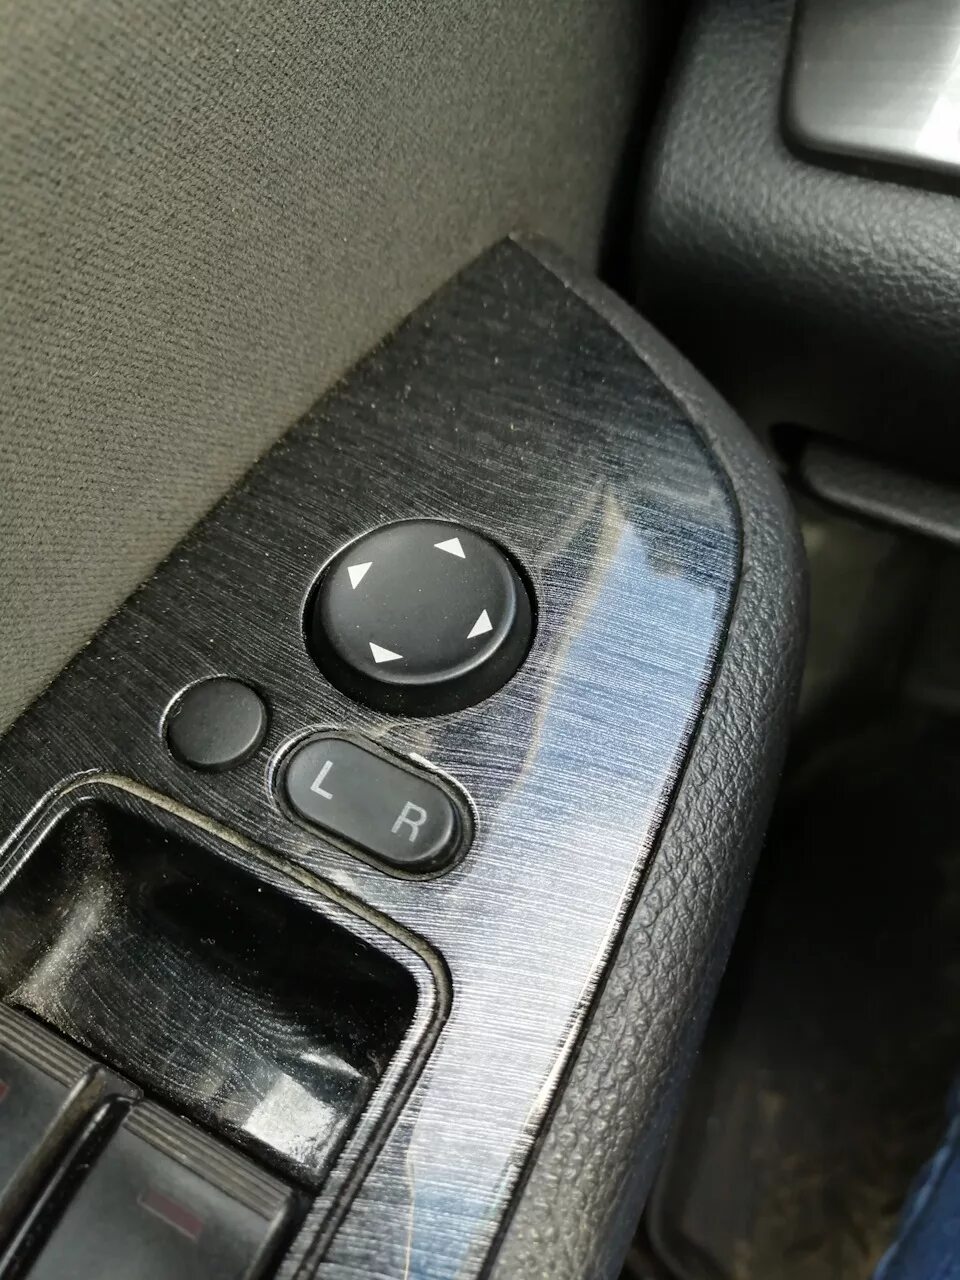 Складывание зеркал мазда 6. Кнопка складывания зеркал Мазда 6. Кнопка Media Mazda 6 GH. Кнопка складывания зеркал Форд Мондео 4. Кнопка для Mazda Mazda 6 (GH).